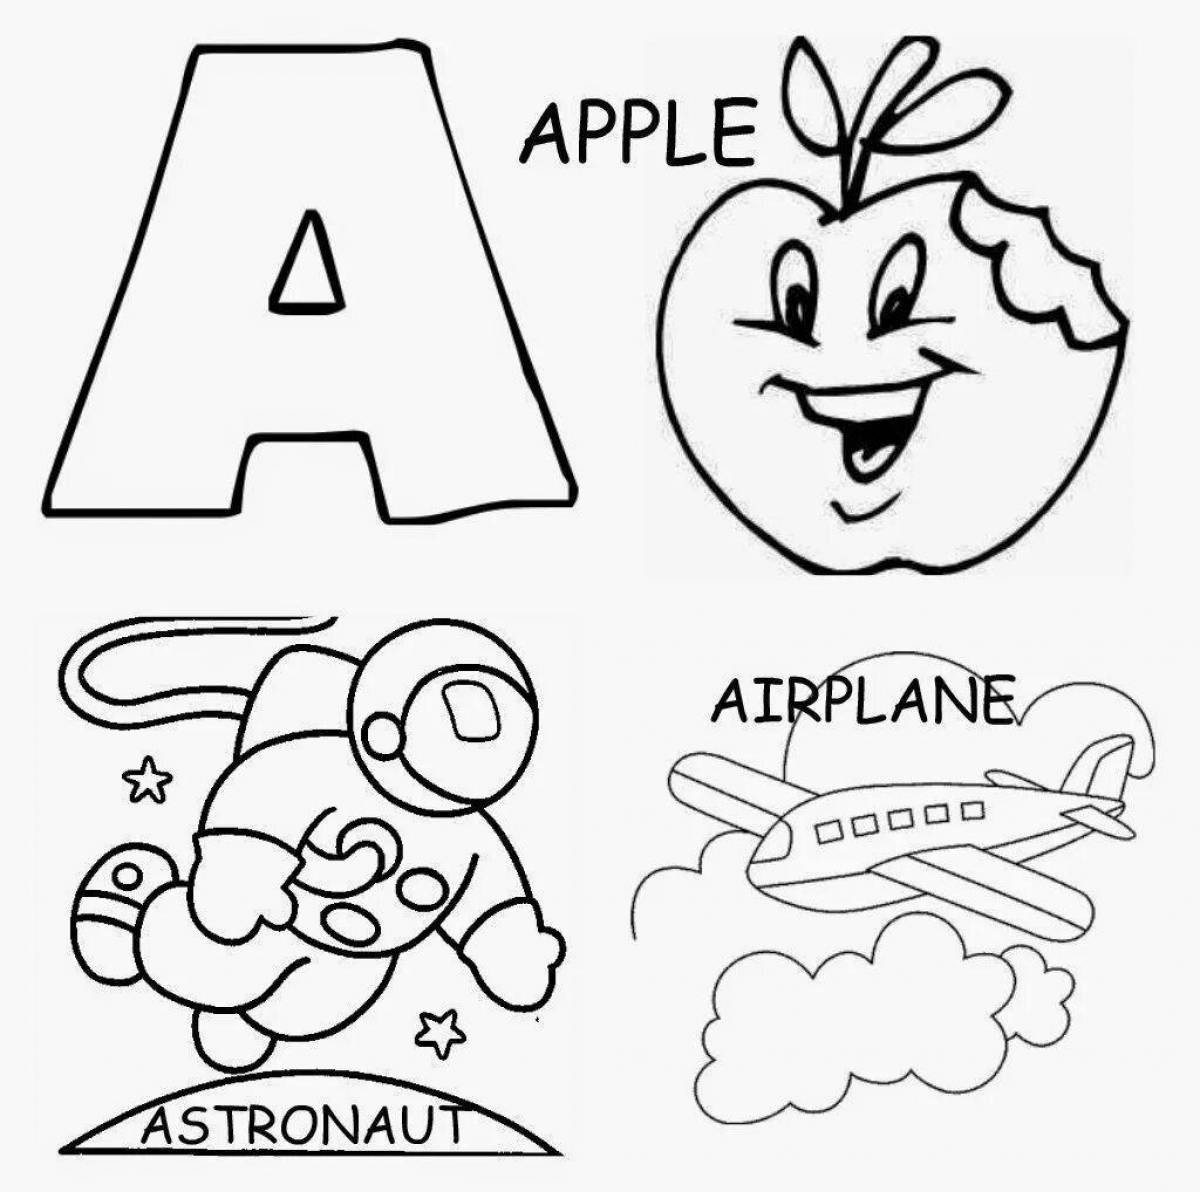 Colouring adorable alphabet lori